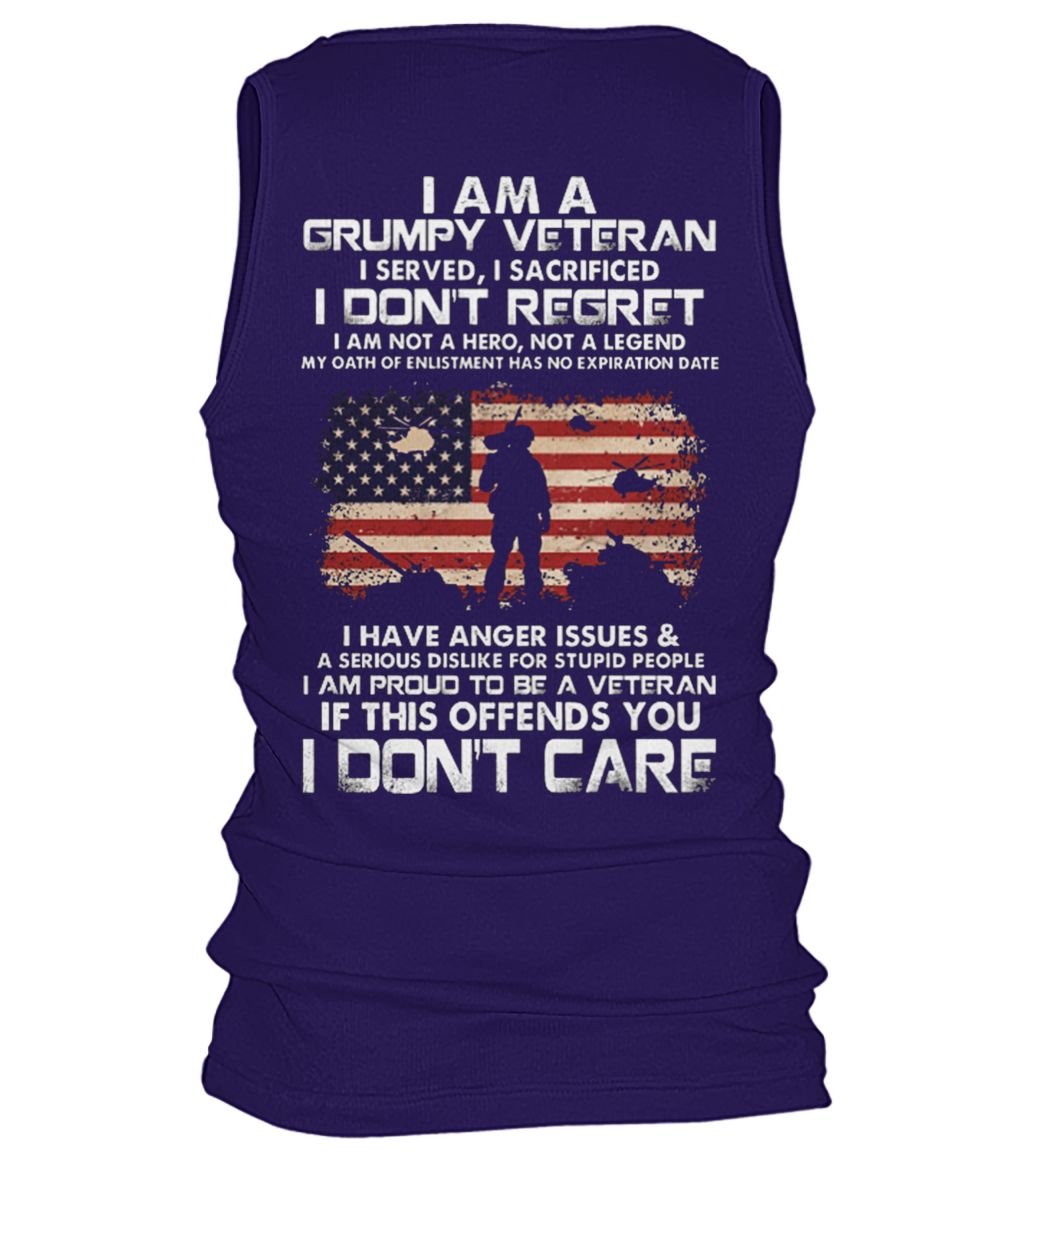 I am a grumpy veteran I served I sacrificed I don't regret men's tank top